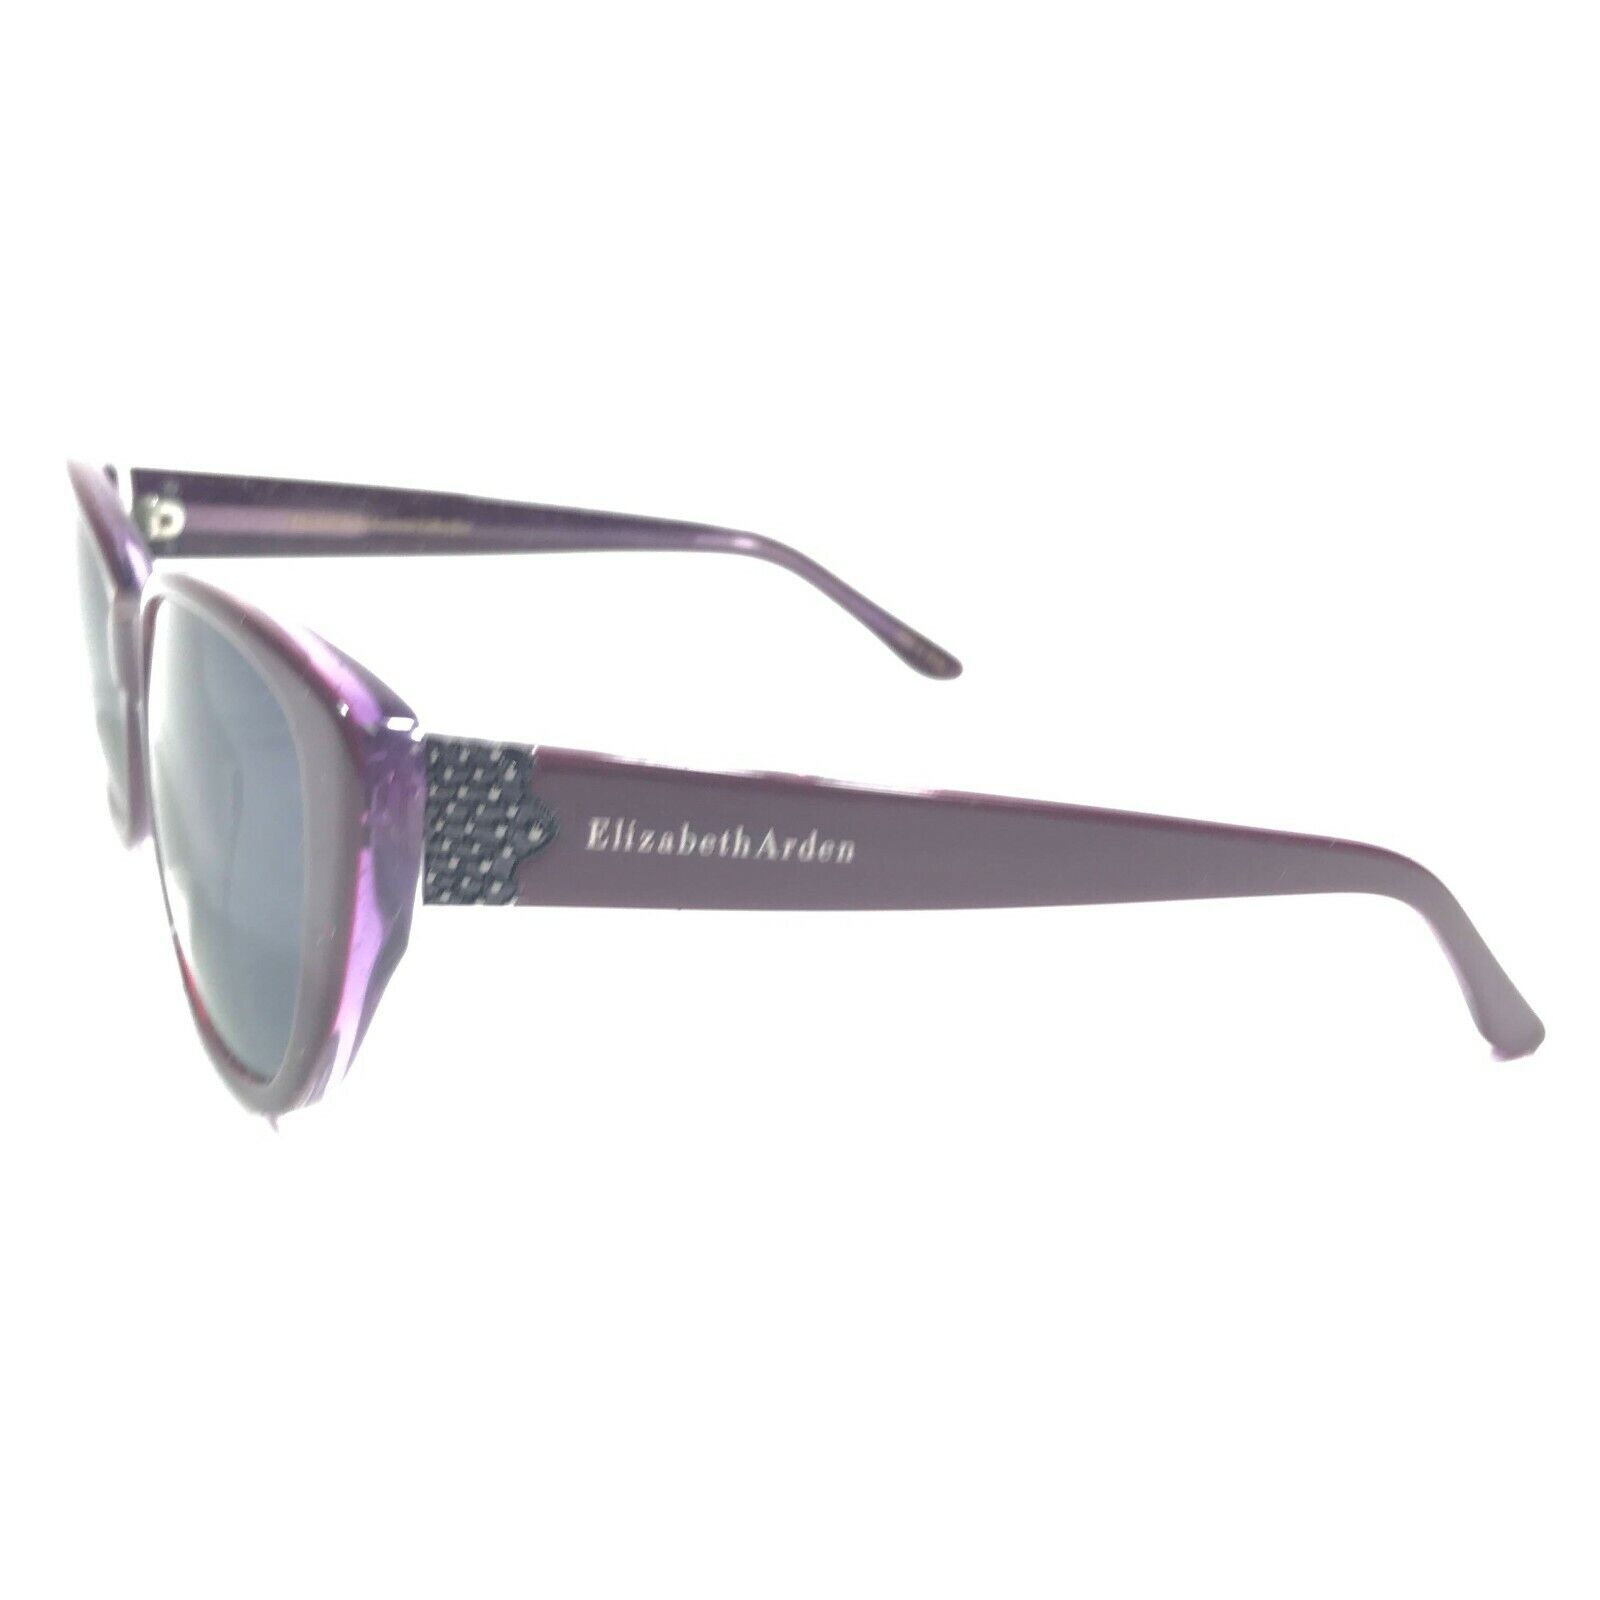 Elizabeth Arden EA5209 2 Sunglasses Cat Eye Purple Frames w/ B...